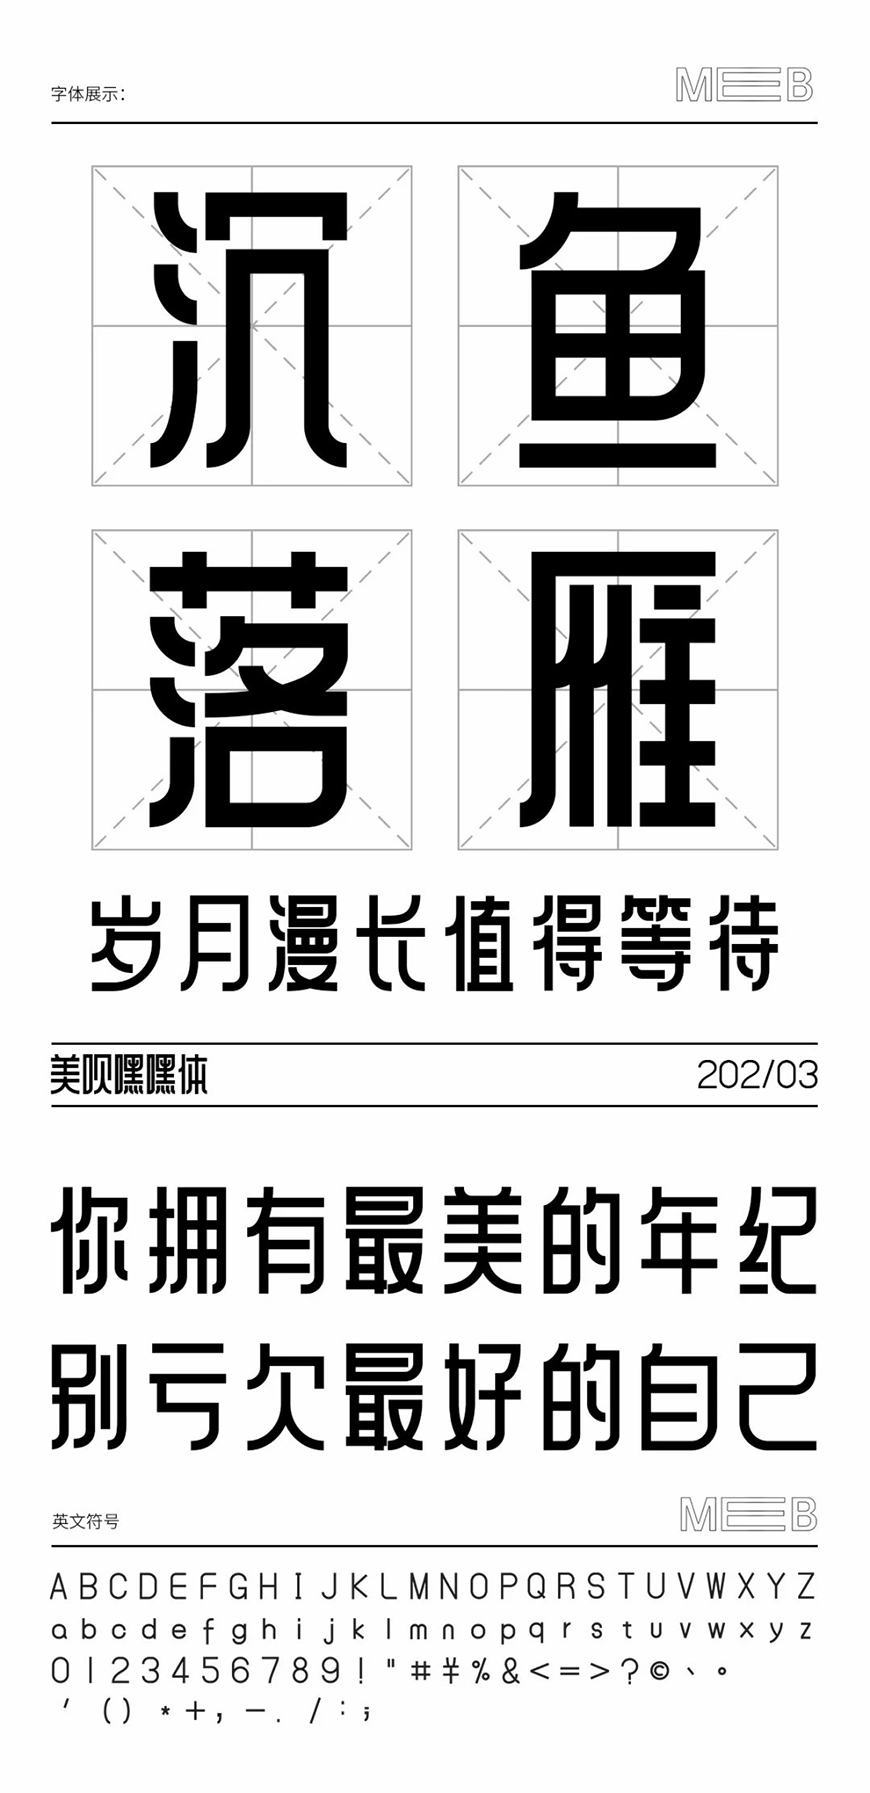 免费字体下载！一款庄重有力朴素大方的中文字体—美呗嘿嘿体